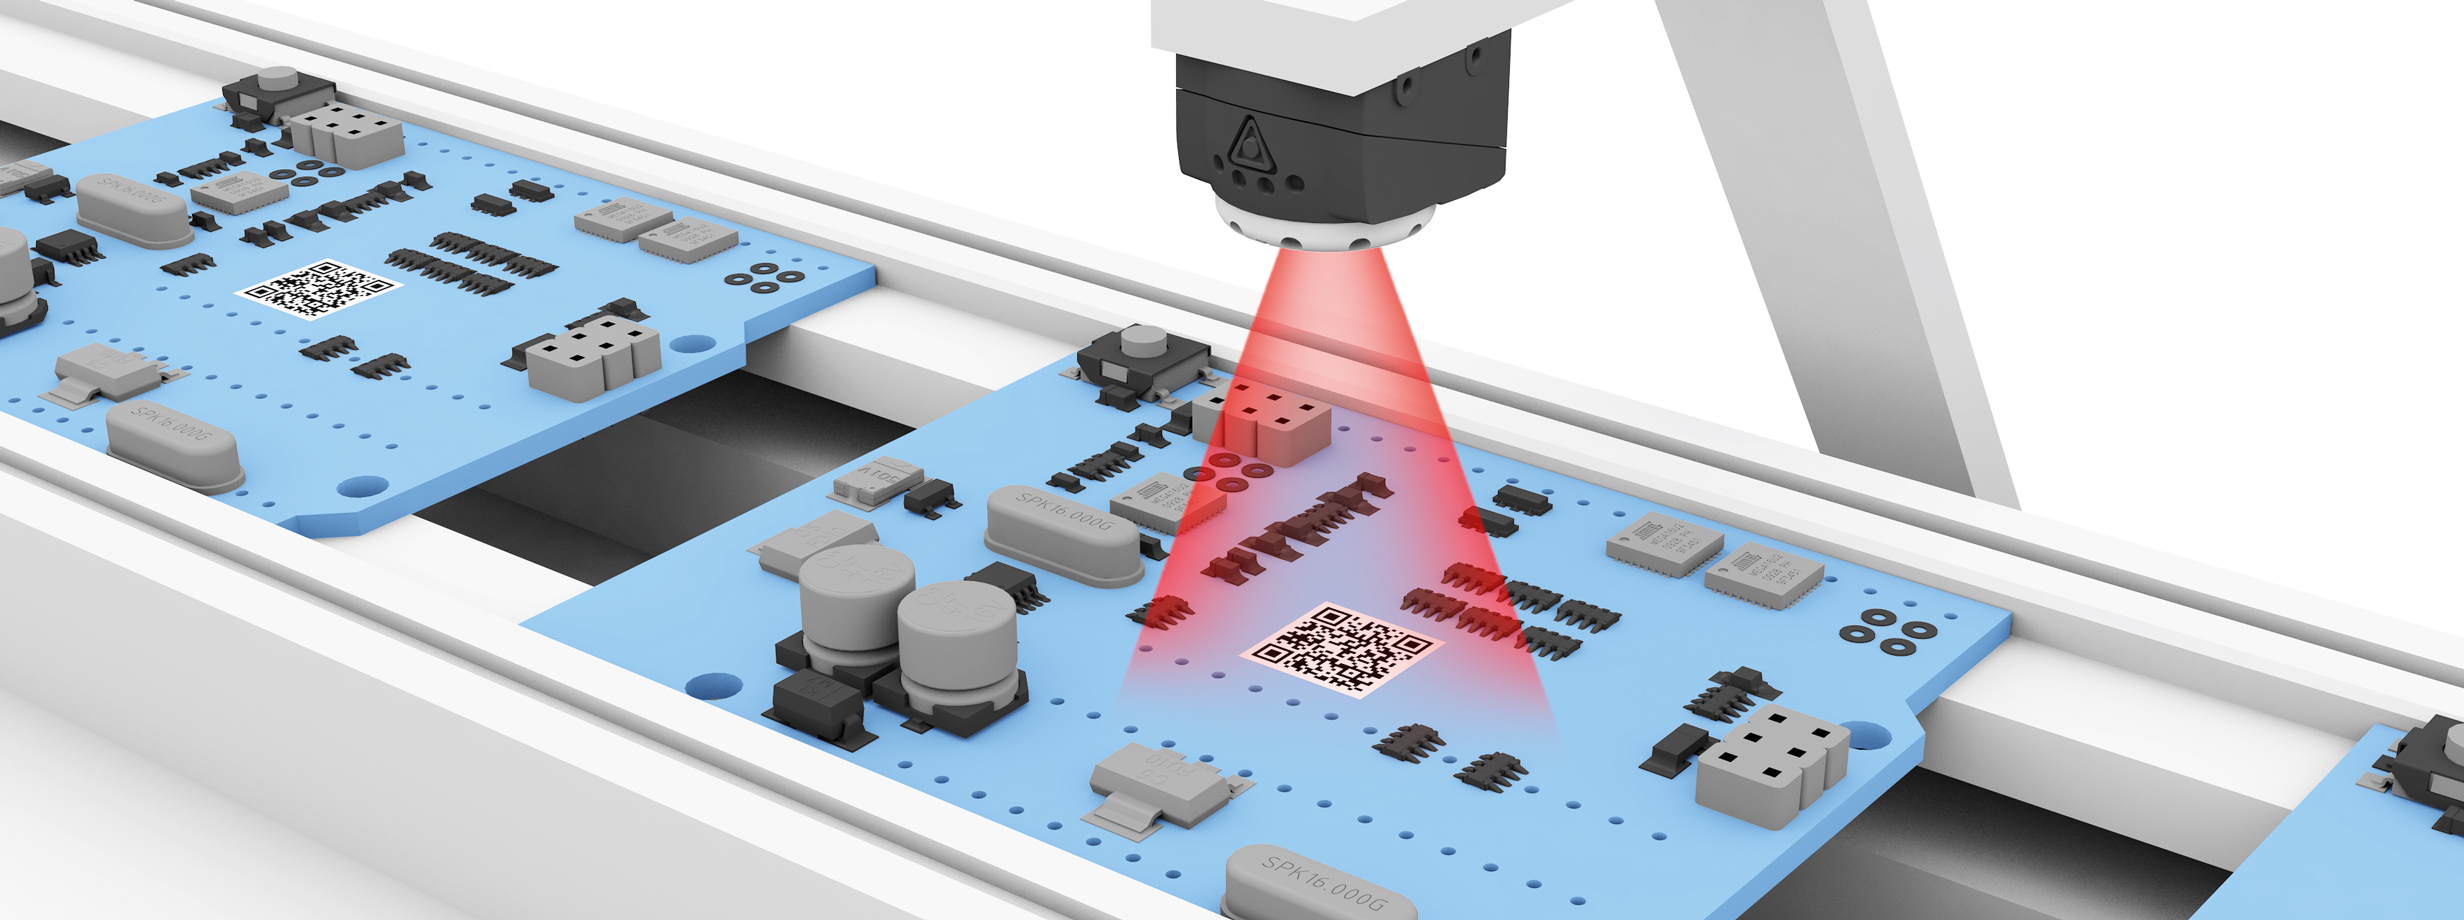 Identificare i circuiti stampati image